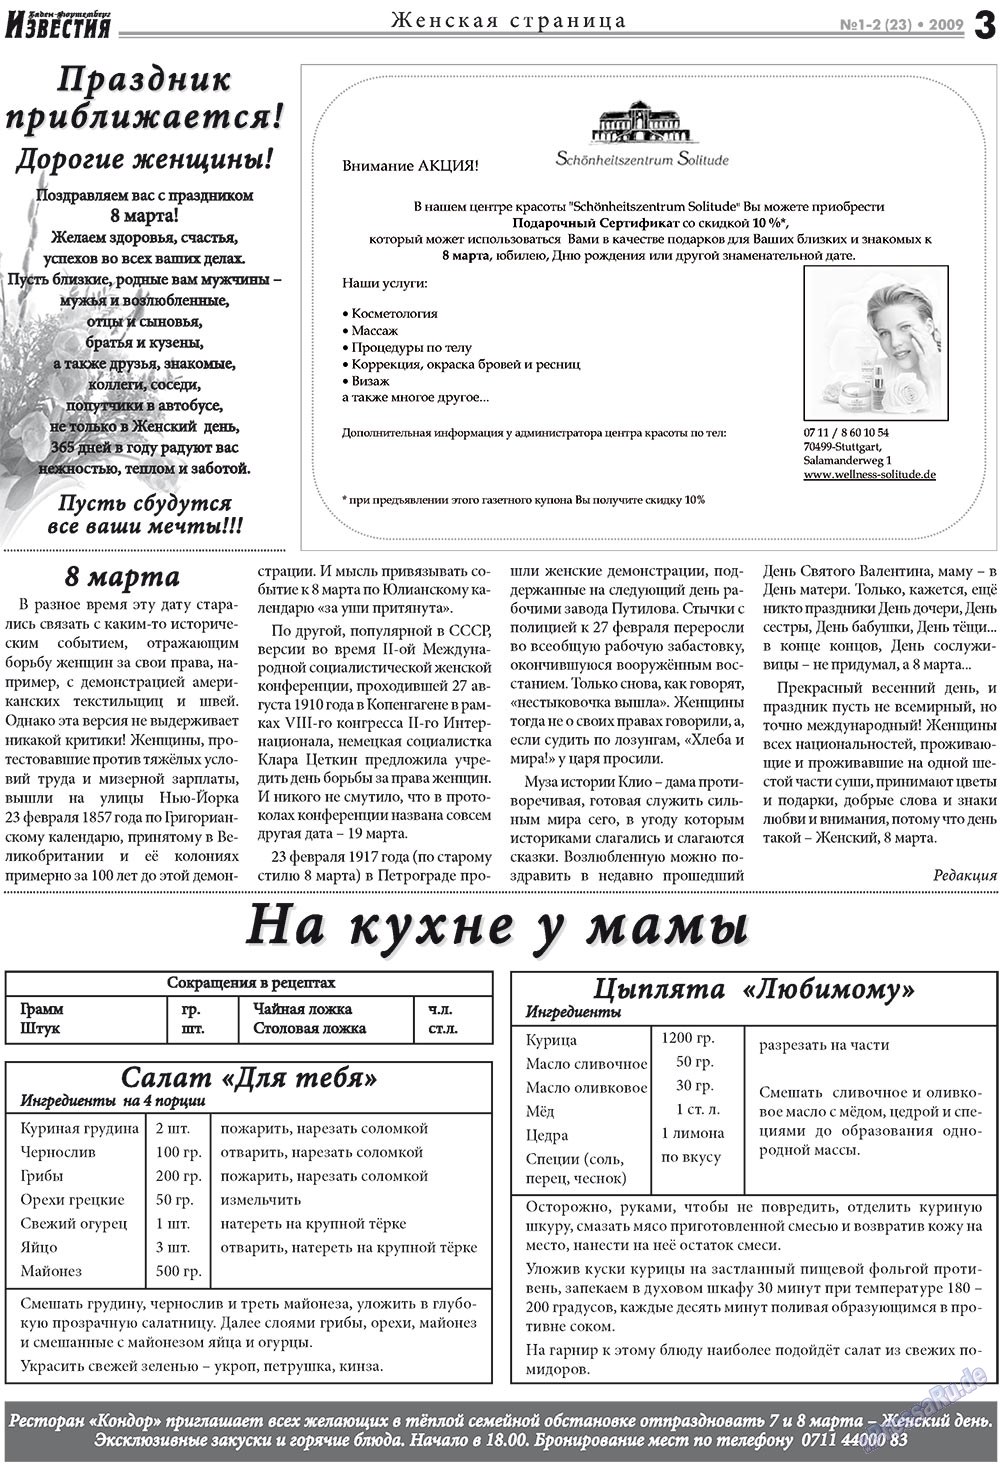 Известия BW, газета. 2009 №1 стр.3